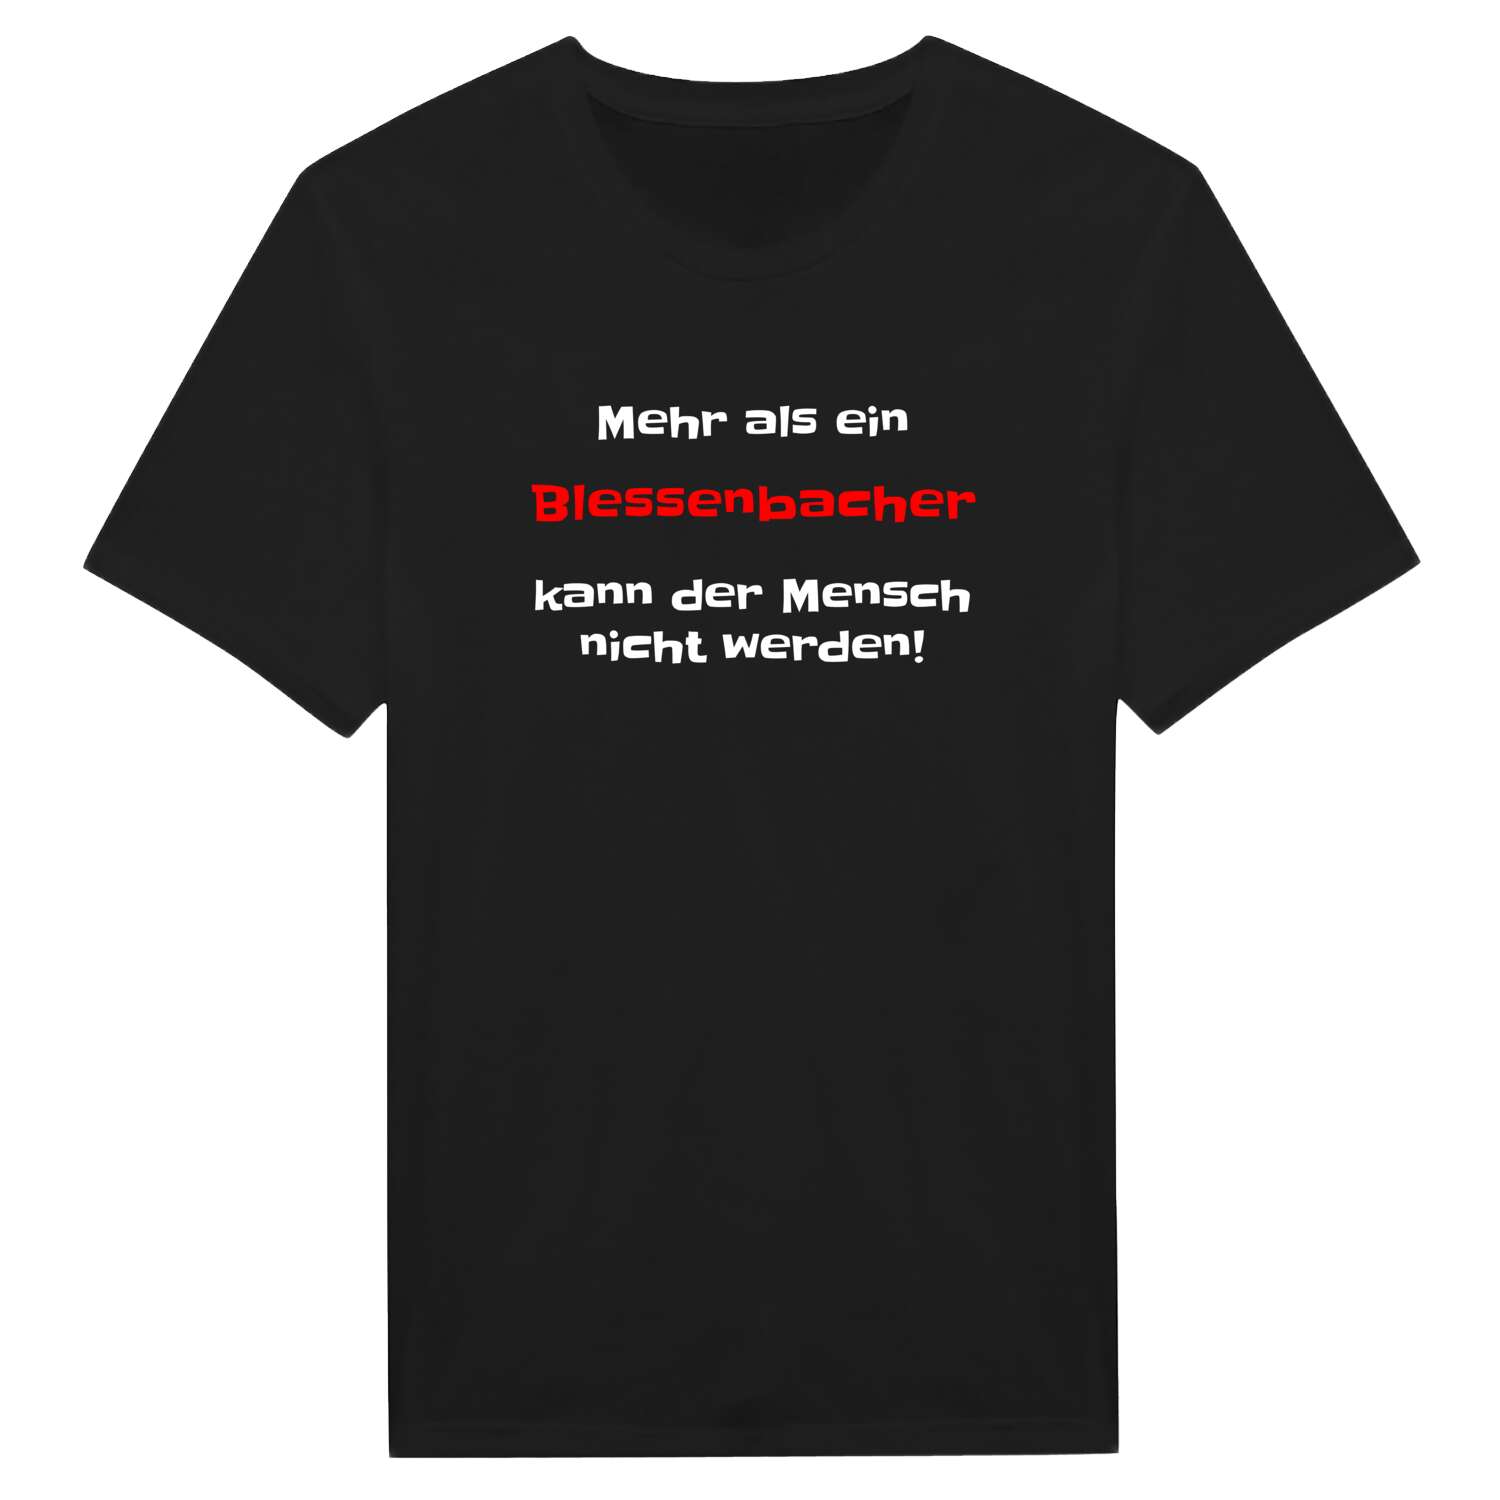 Blessenbach T-Shirt »Mehr als ein«